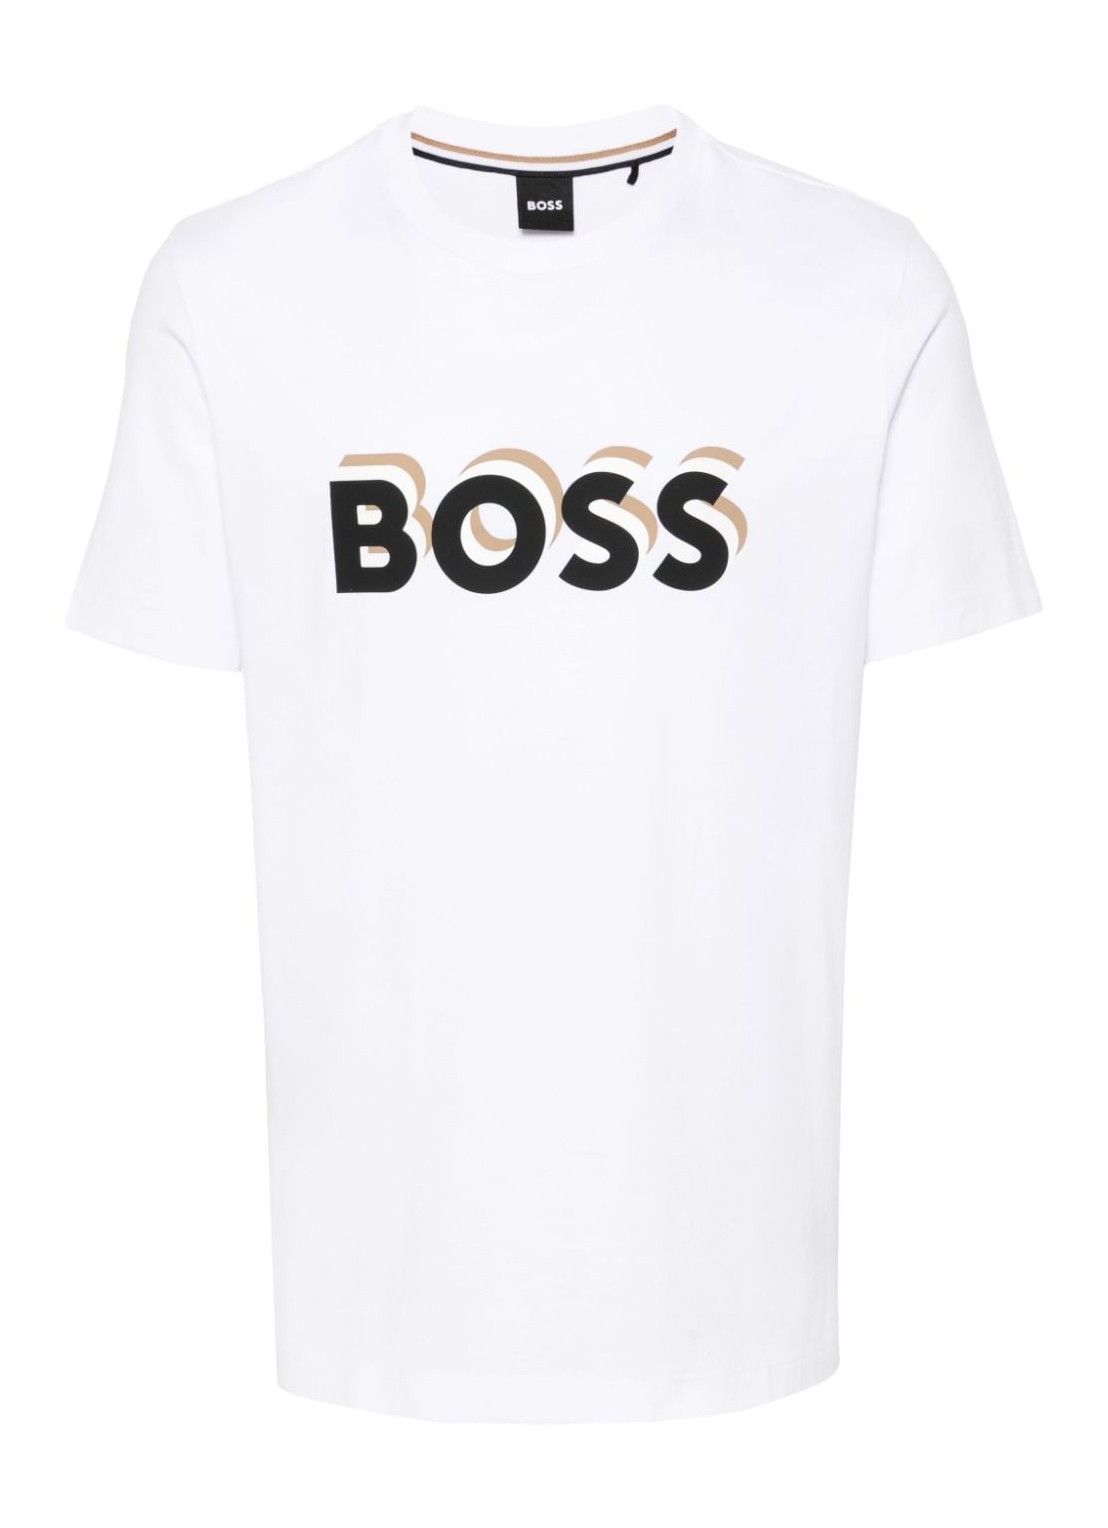 Camiseta boss t-shirt man tiburt 427 50506923 100 talla blanco
 